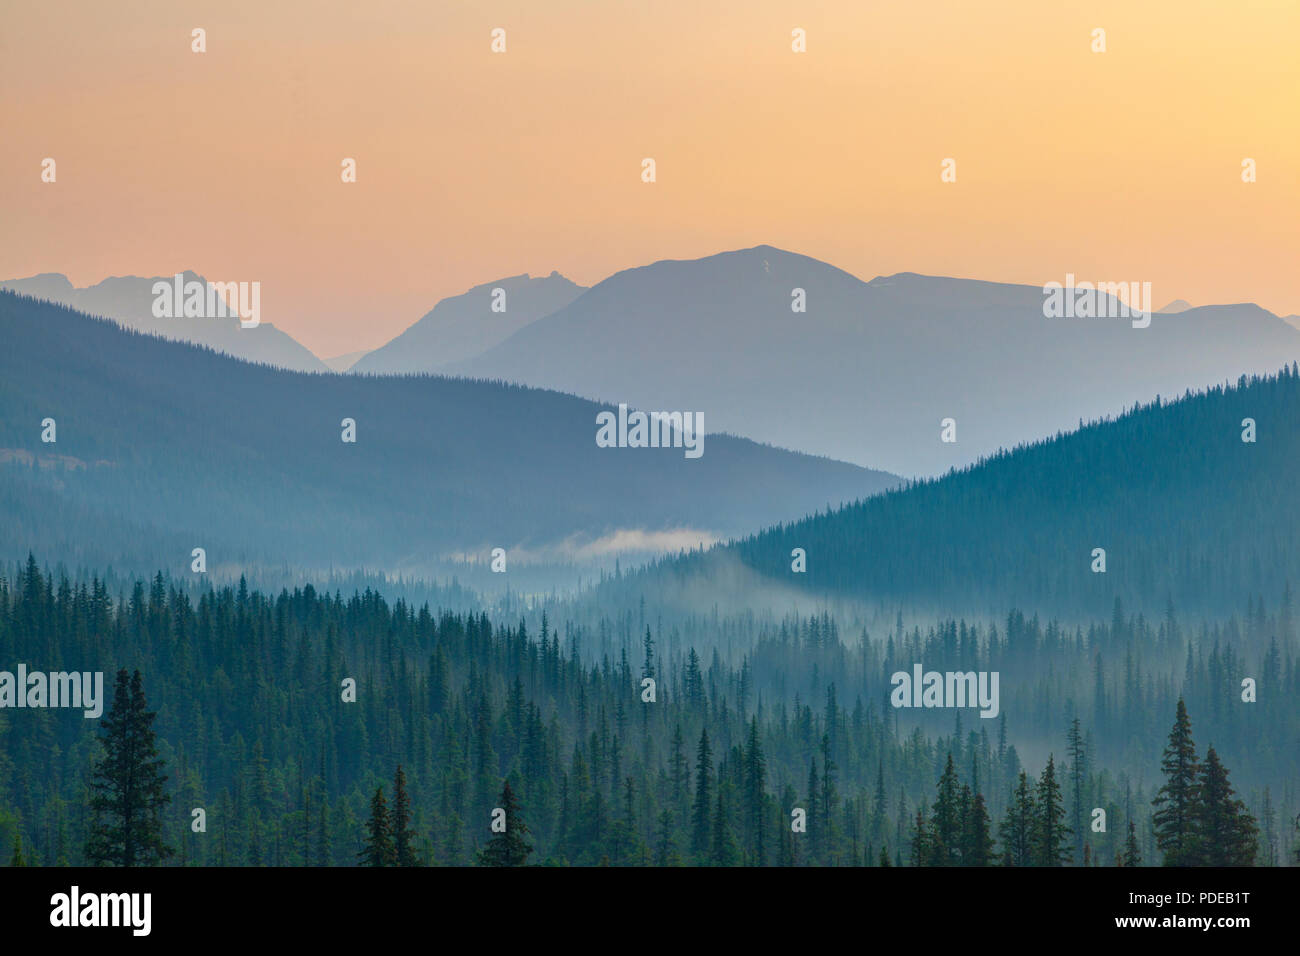 Break Of Dawn Anzeigen golden Sunrise im Banff National Park mit Silhouette von weit entfernten Bergrücken und Pinien im Vordergrund. Stockfoto